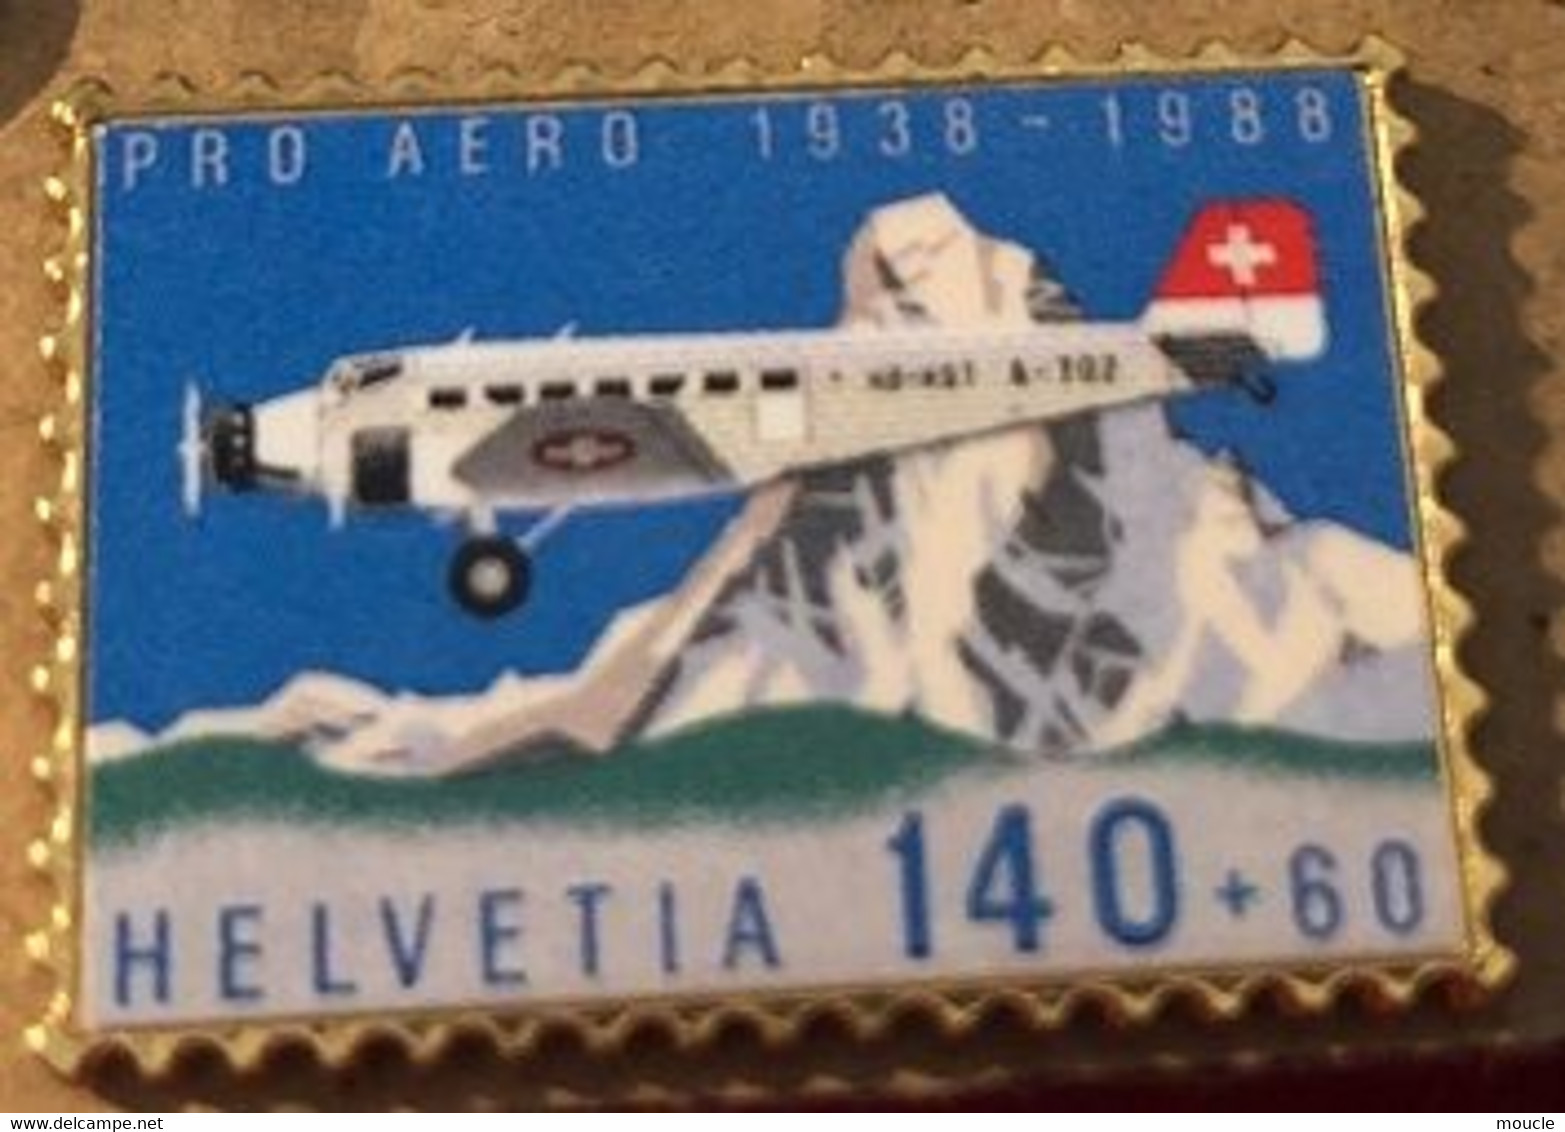 AVION - PLANE - FLUGZEUG - AEREO - HELVETIA 140+60 - CERVIN - PRO AERO 1938/1988  - SUISSE - SCHWEIZ -SWITZERLAND-(BLEU) - Luftfahrt